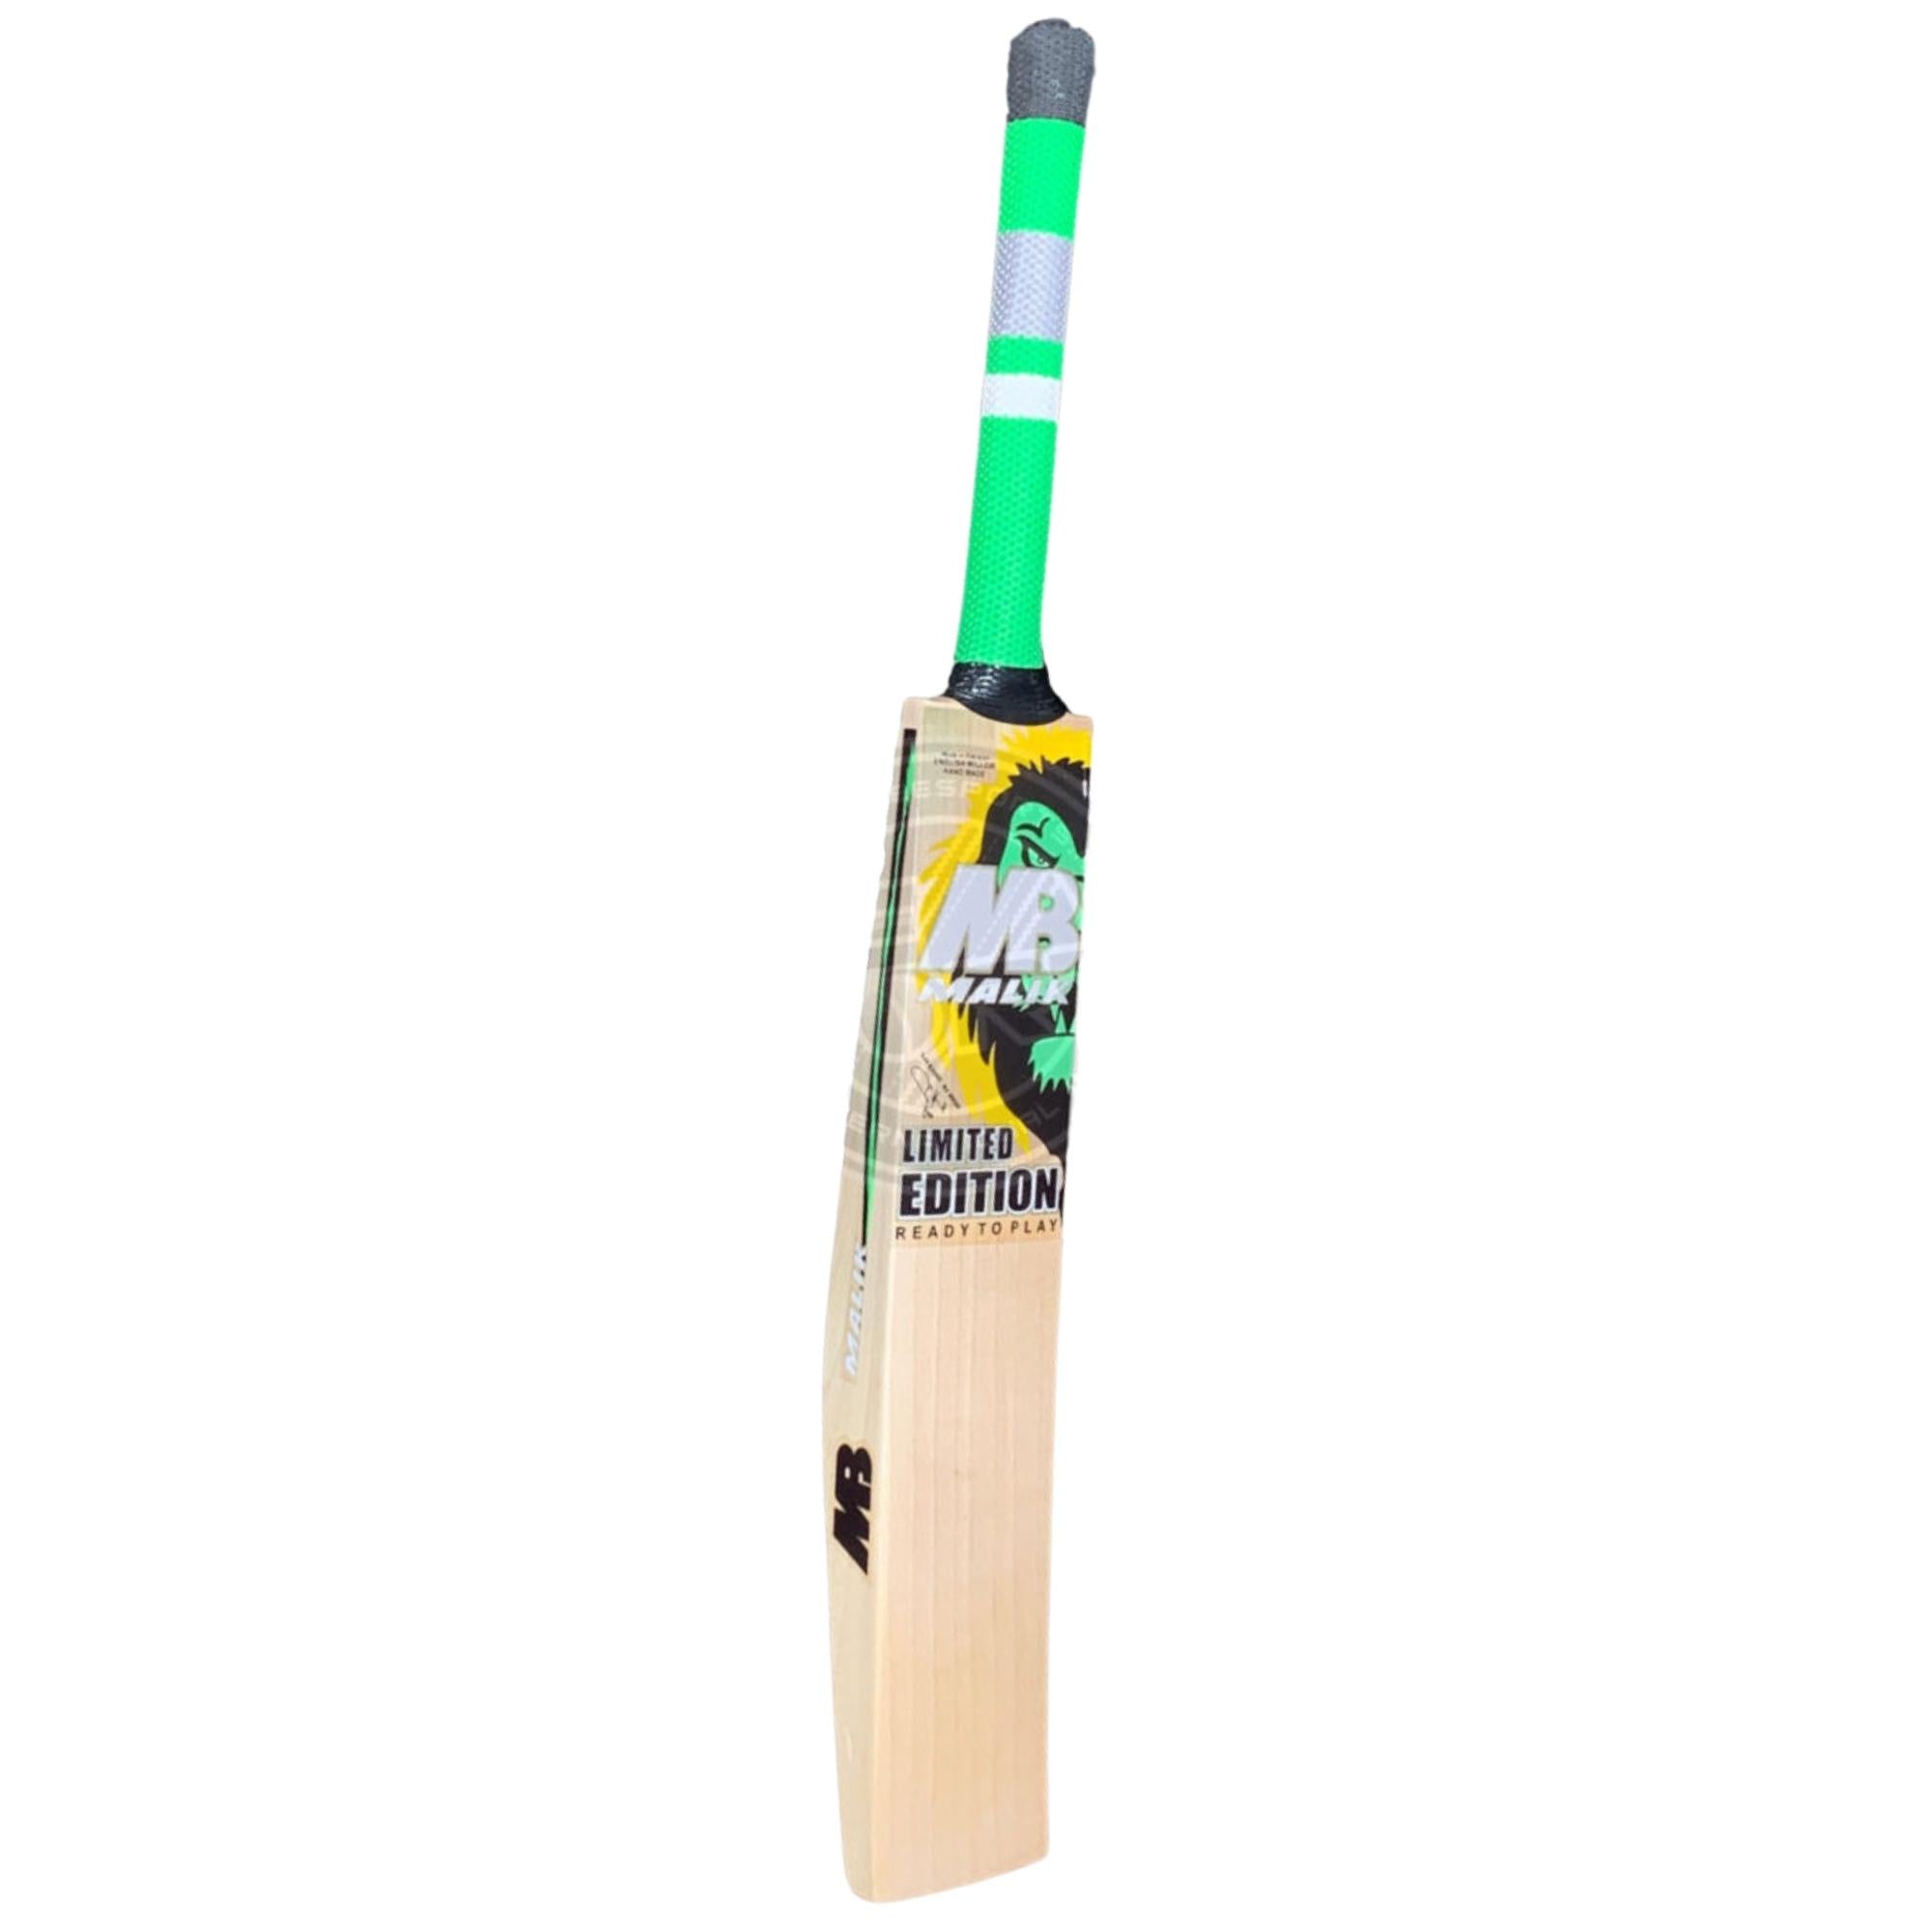 MB Malik Limited Edition by SA Cricket Bat